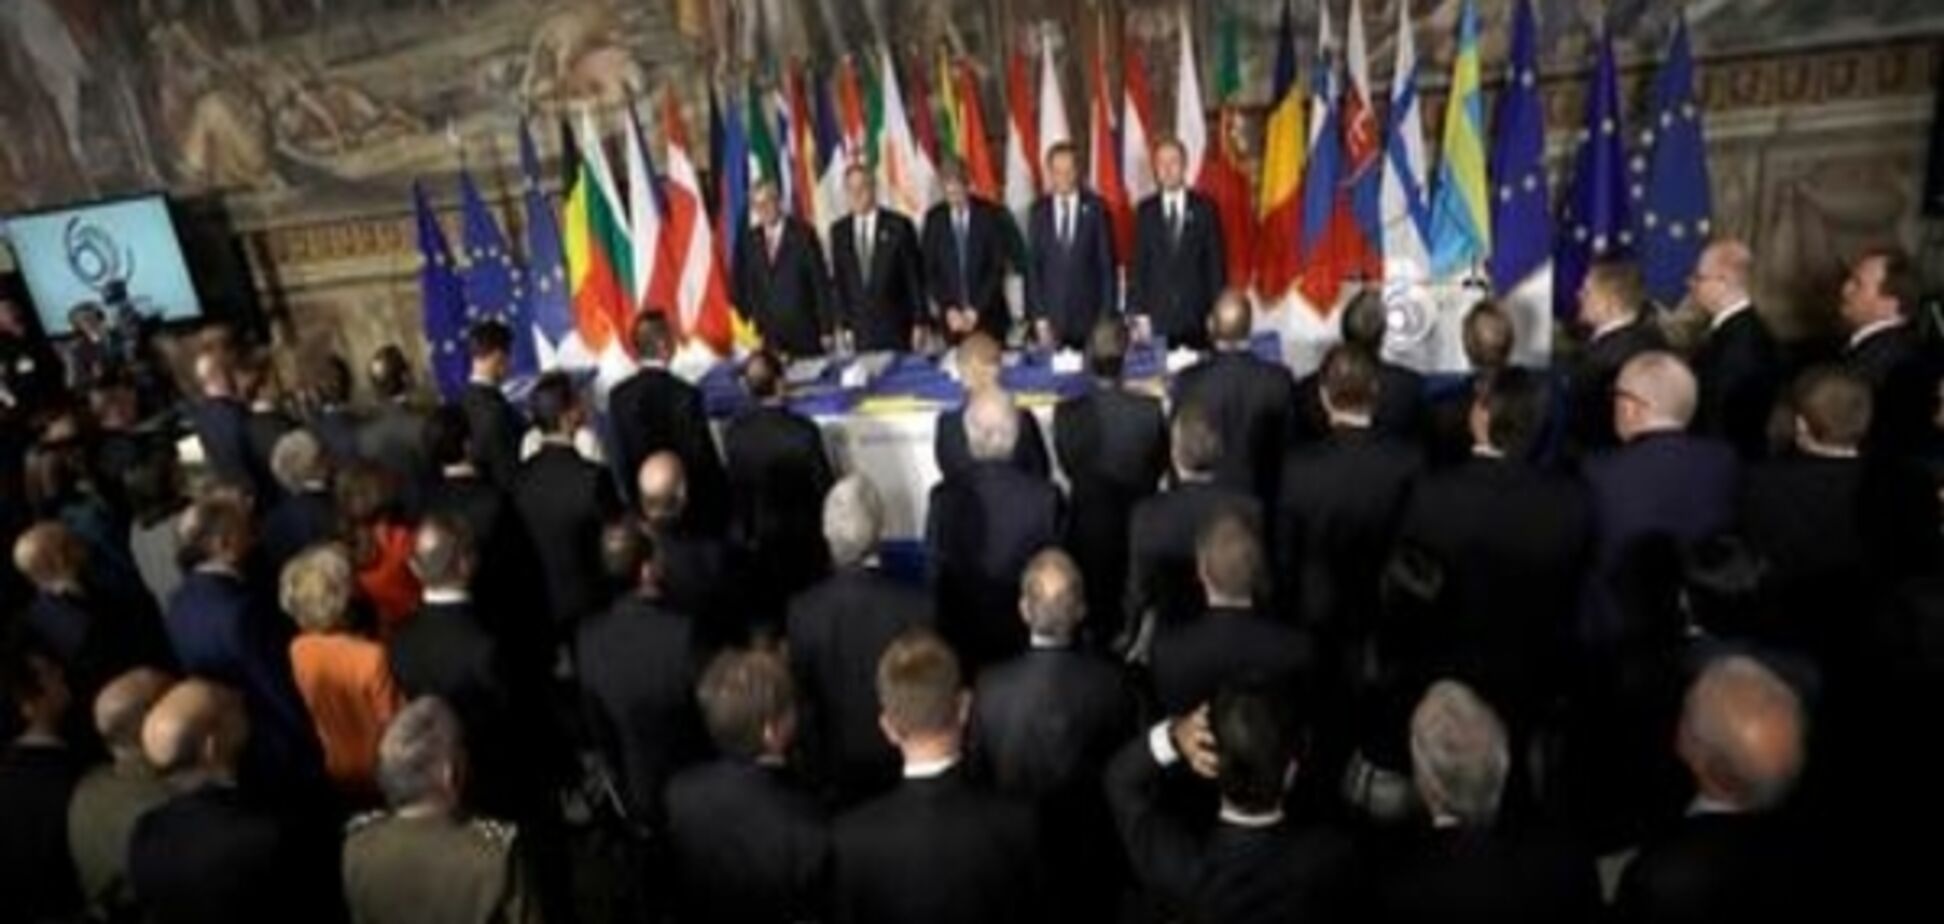 Лідери ЄС висловились за євроінтеграцію 'з різною швидкістю'